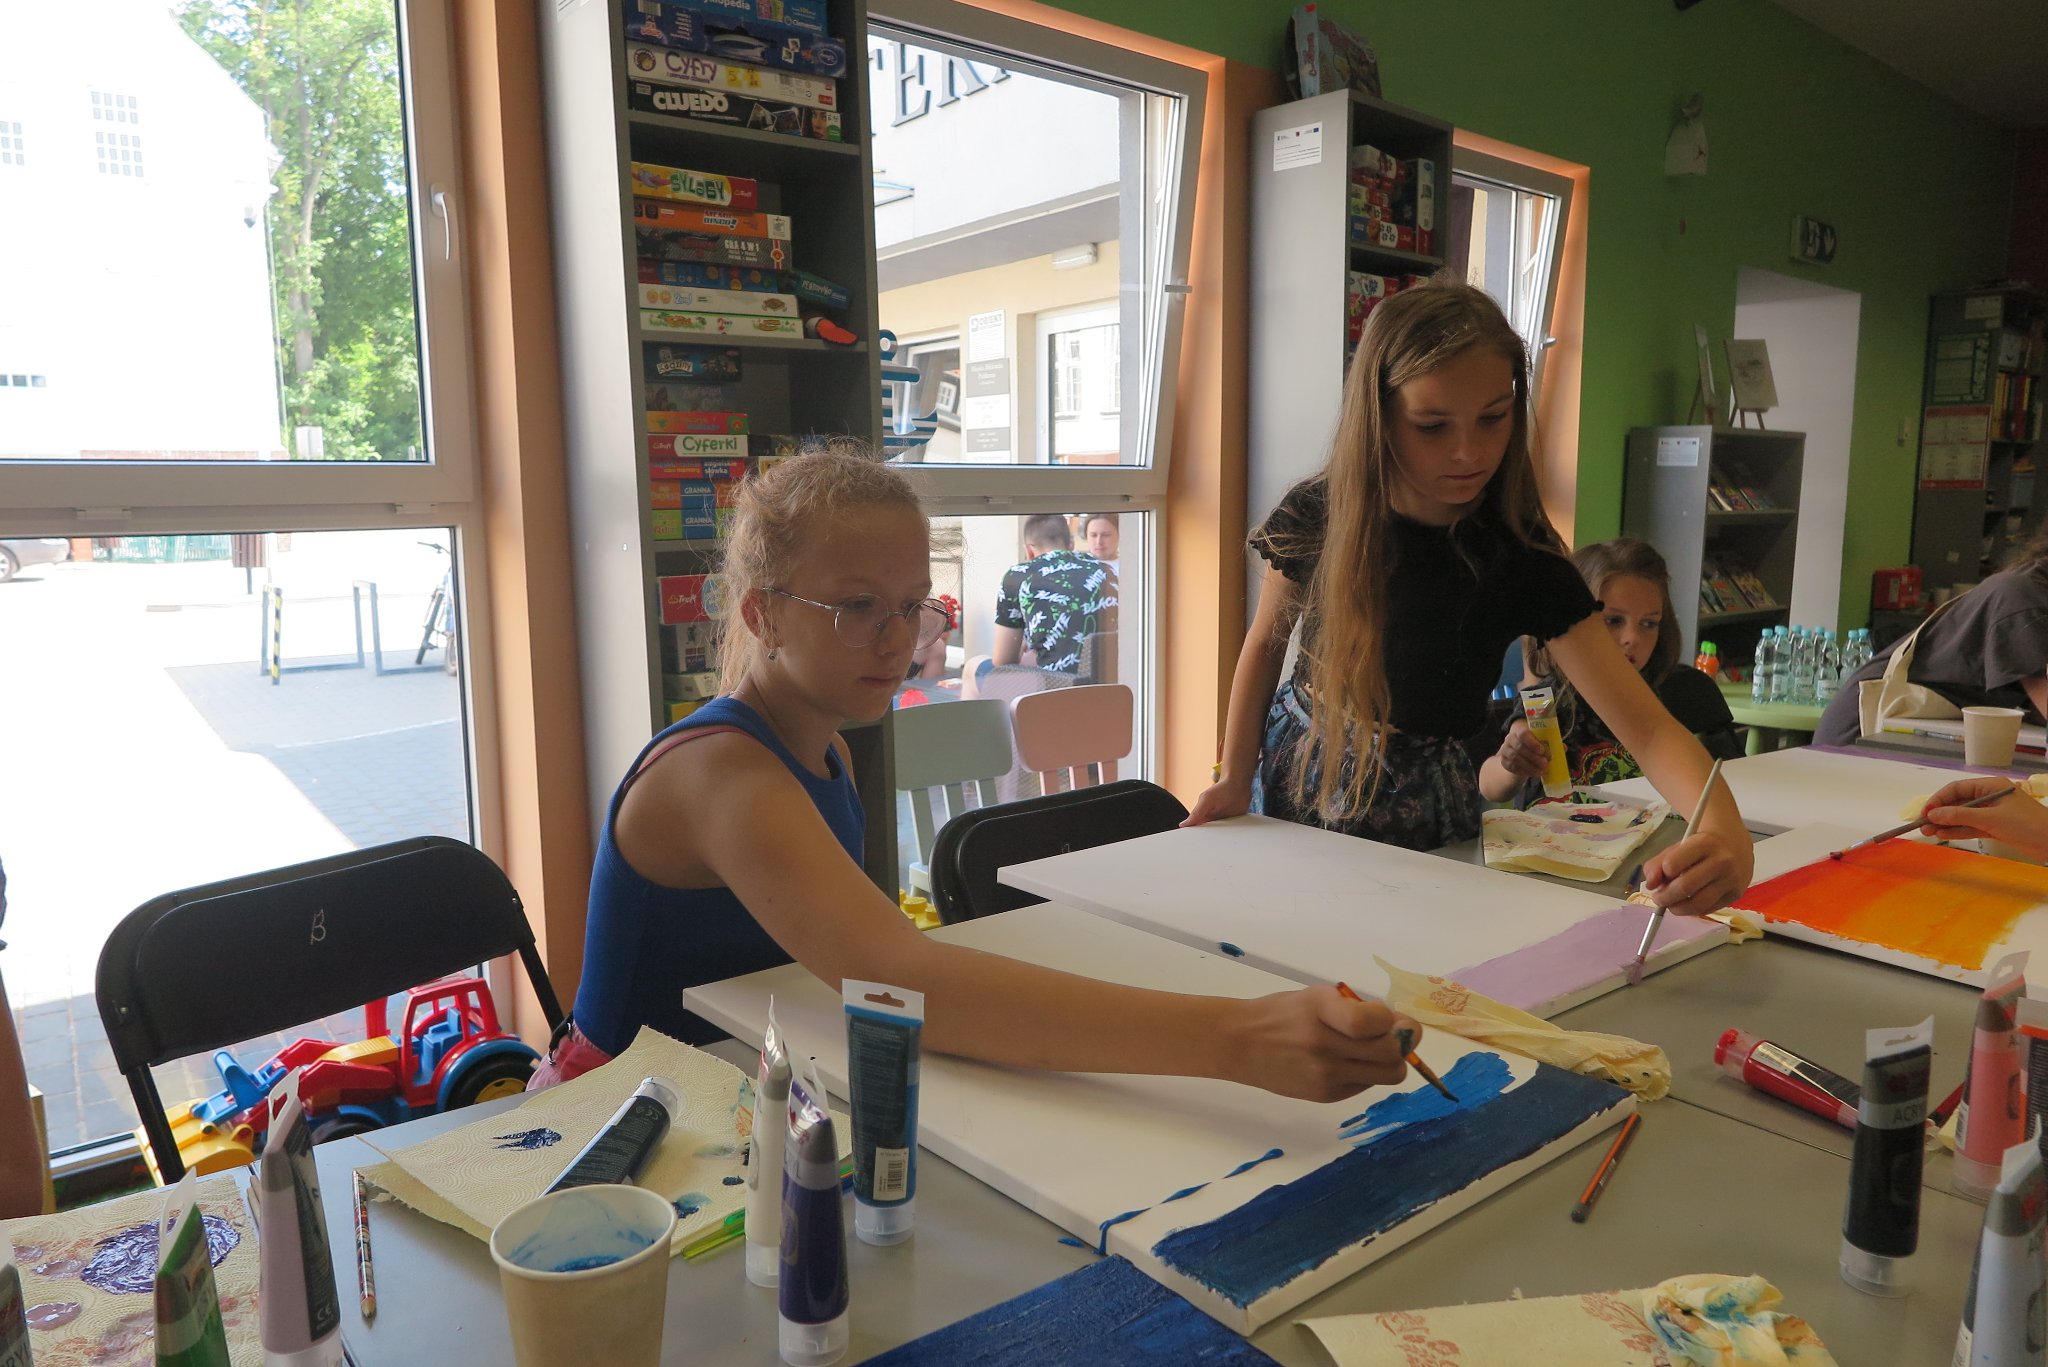 uczestnicy warsztatów malowania na płótnie siedzą na krzesłach przy stoliku i malują obrazy leżące na blacie stołu